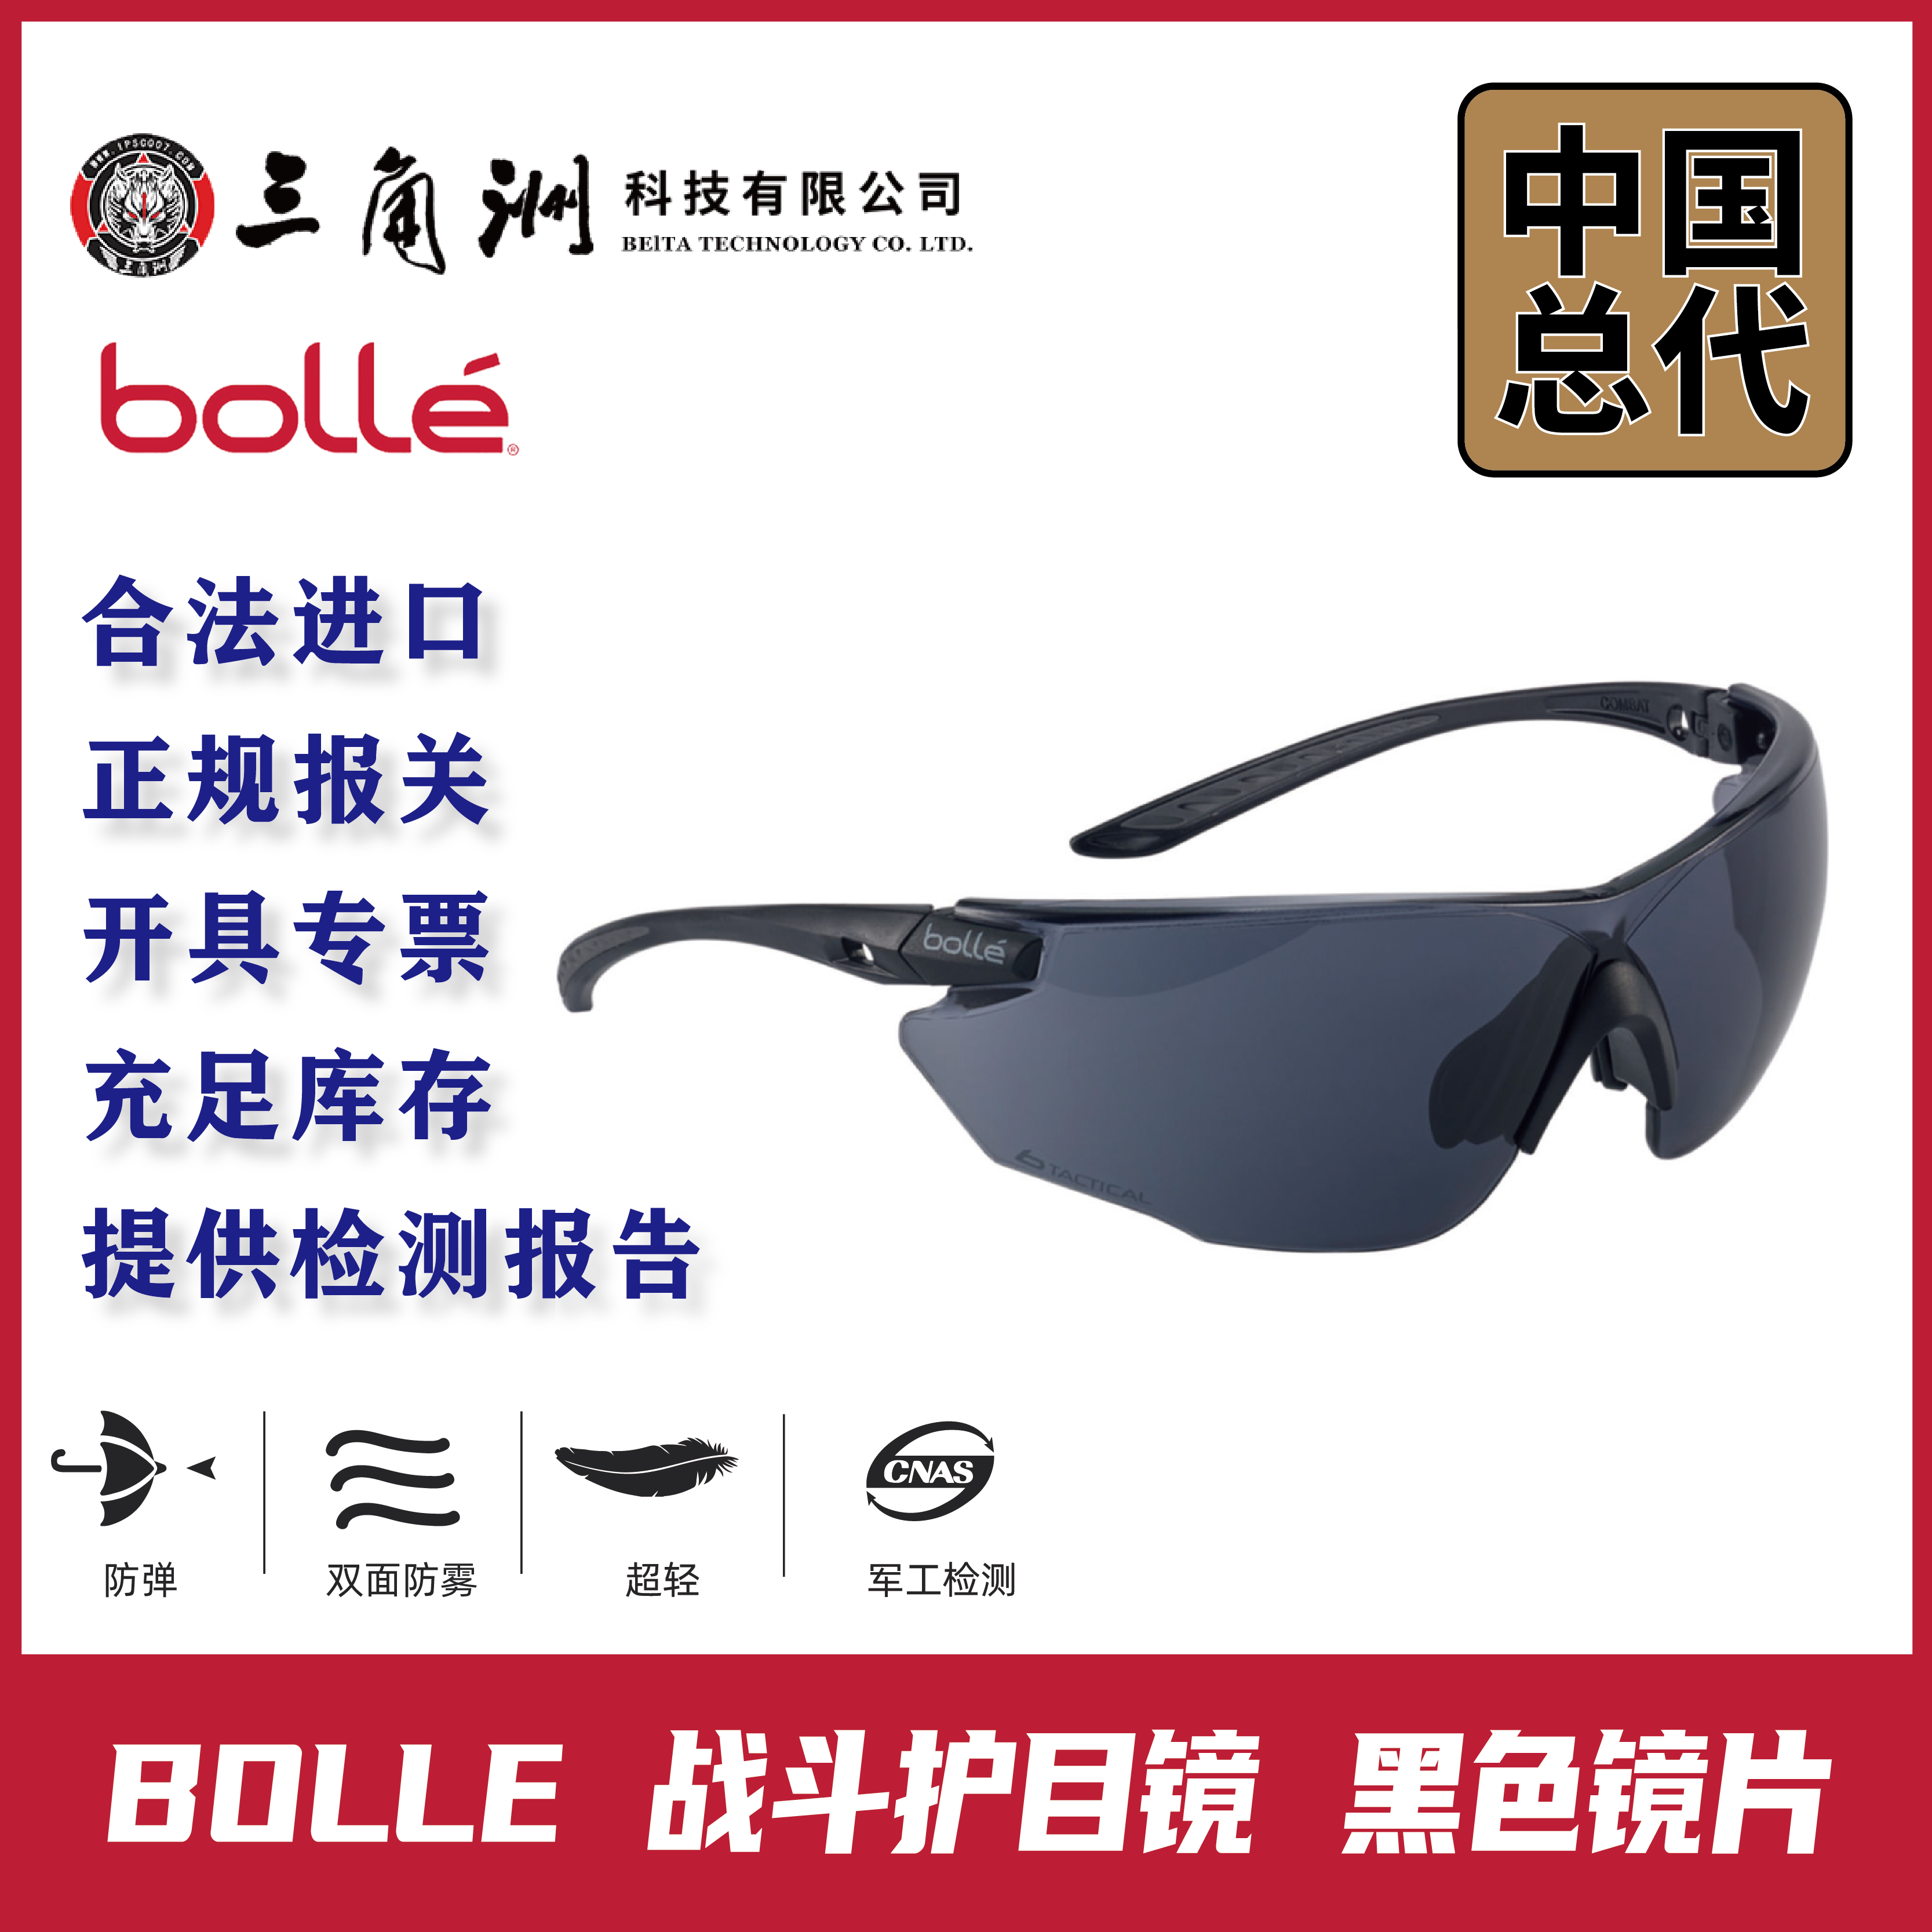 BOLLE首图-战斗护目镜-主图更新-1_画板1